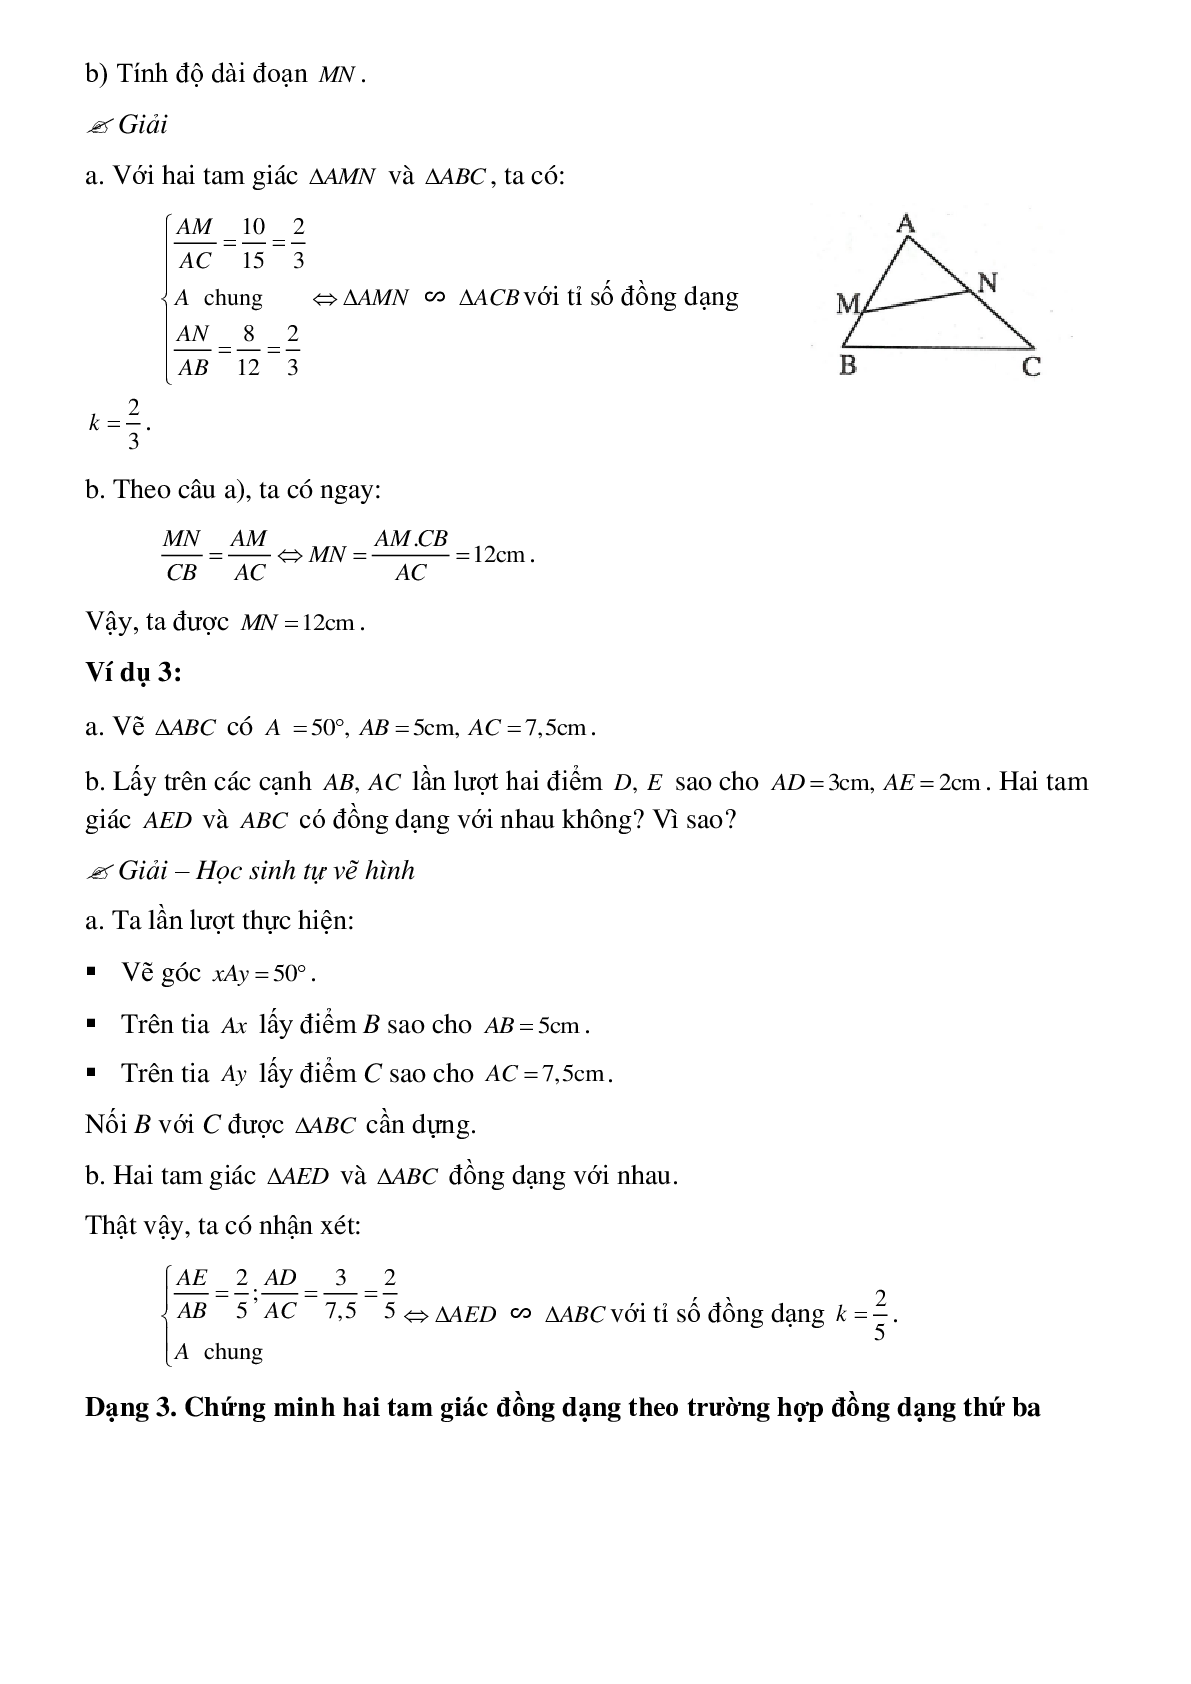 Phương pháp giải cụ thể, bài bác tập dượt về Chứng minh nhị tam giác đồng dạng tinh lọc (trang 4)